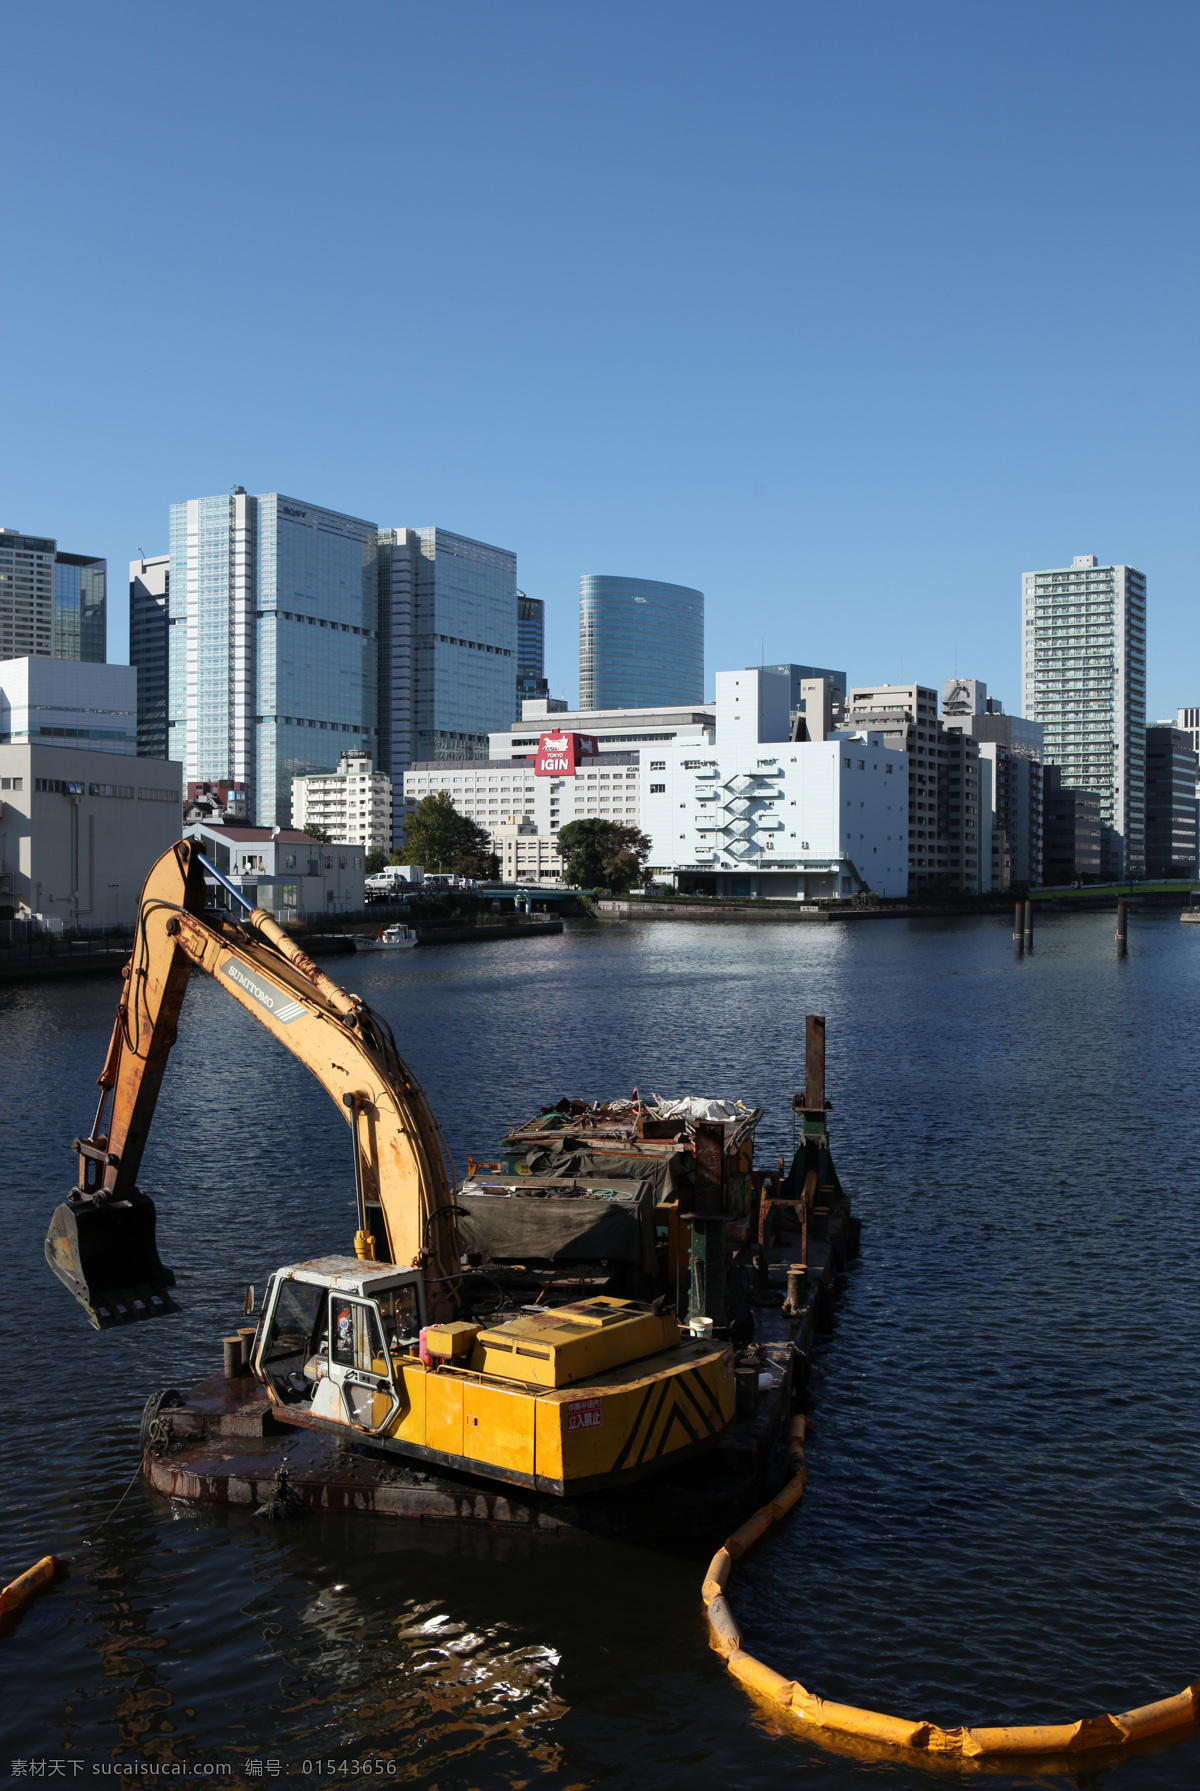 挖掘机 东京湾 海边 挖土机 船只 船上 海边建筑 高楼 楼房 岸边 工业生产 现代科技